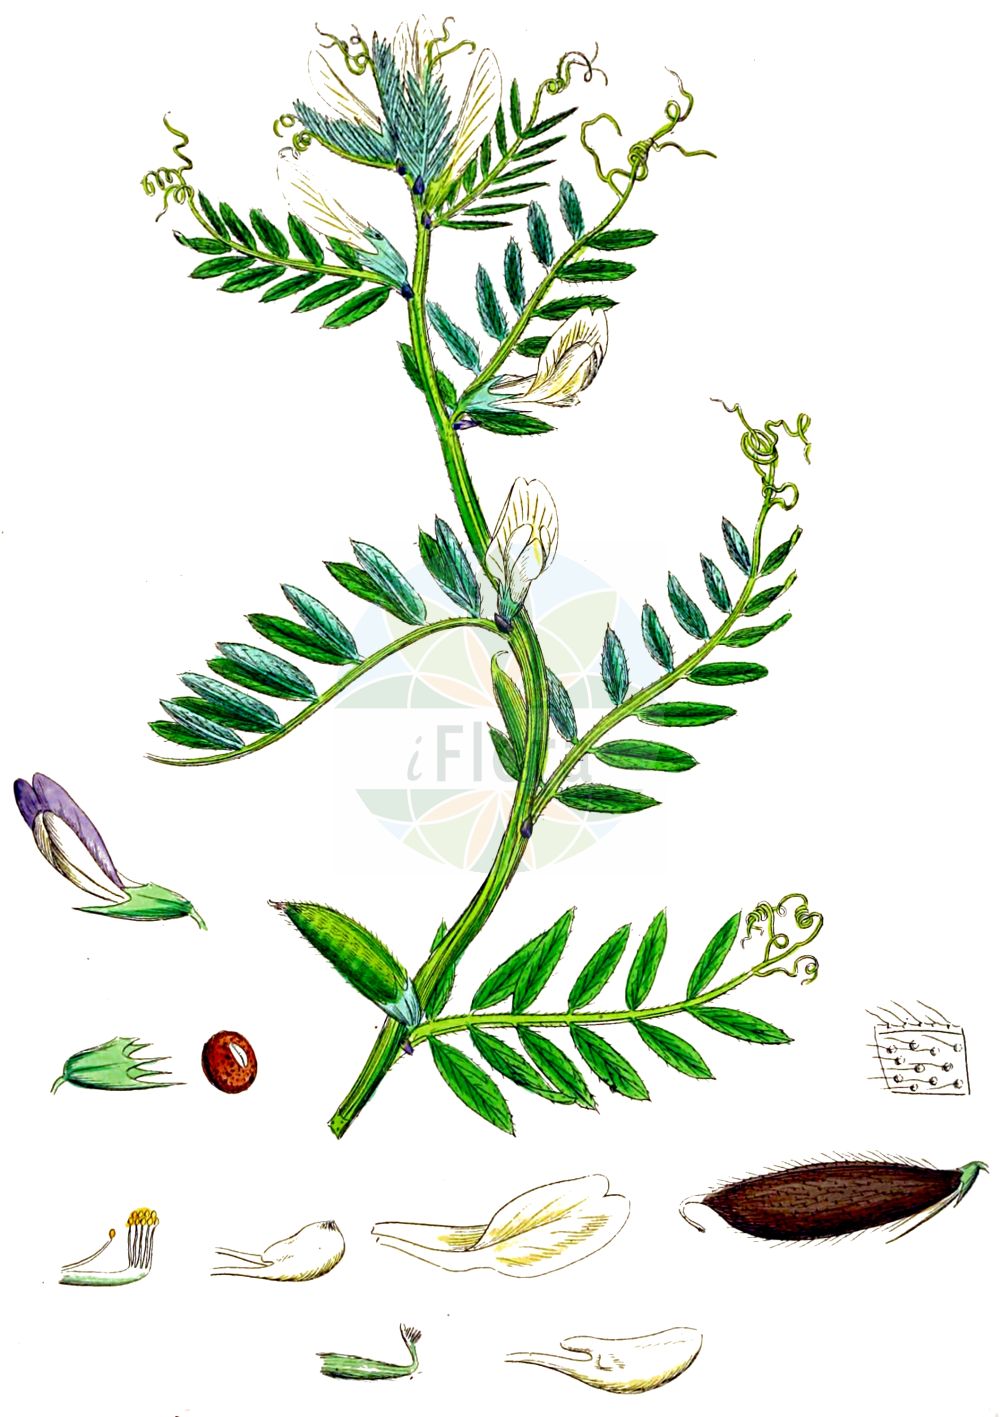 Historische Abbildung von Vicia lutea (Gelbe Wicke - Yellow-vetch). Das Bild zeigt Blatt, Bluete, Frucht und Same. ---- Historical Drawing of Vicia lutea (Gelbe Wicke - Yellow-vetch). The image is showing leaf, flower, fruit and seed.(Vicia lutea,Gelbe Wicke,Yellow-vetch,Hypechusa lutea,Vicia ciliata,Vicia lineata,Vicia lutea,Vicia lutea subsp. cavanillesii,Gelbe Wicke,Yellow-vetch,Smooth Yellow Vetch,Vicia,Wicke,Vetch,Fabaceae,Schmetterlingsblütler,Pea family,Blatt,Bluete,Frucht,Same,leaf,flower,fruit,seed,Sowerby (1790-1813))